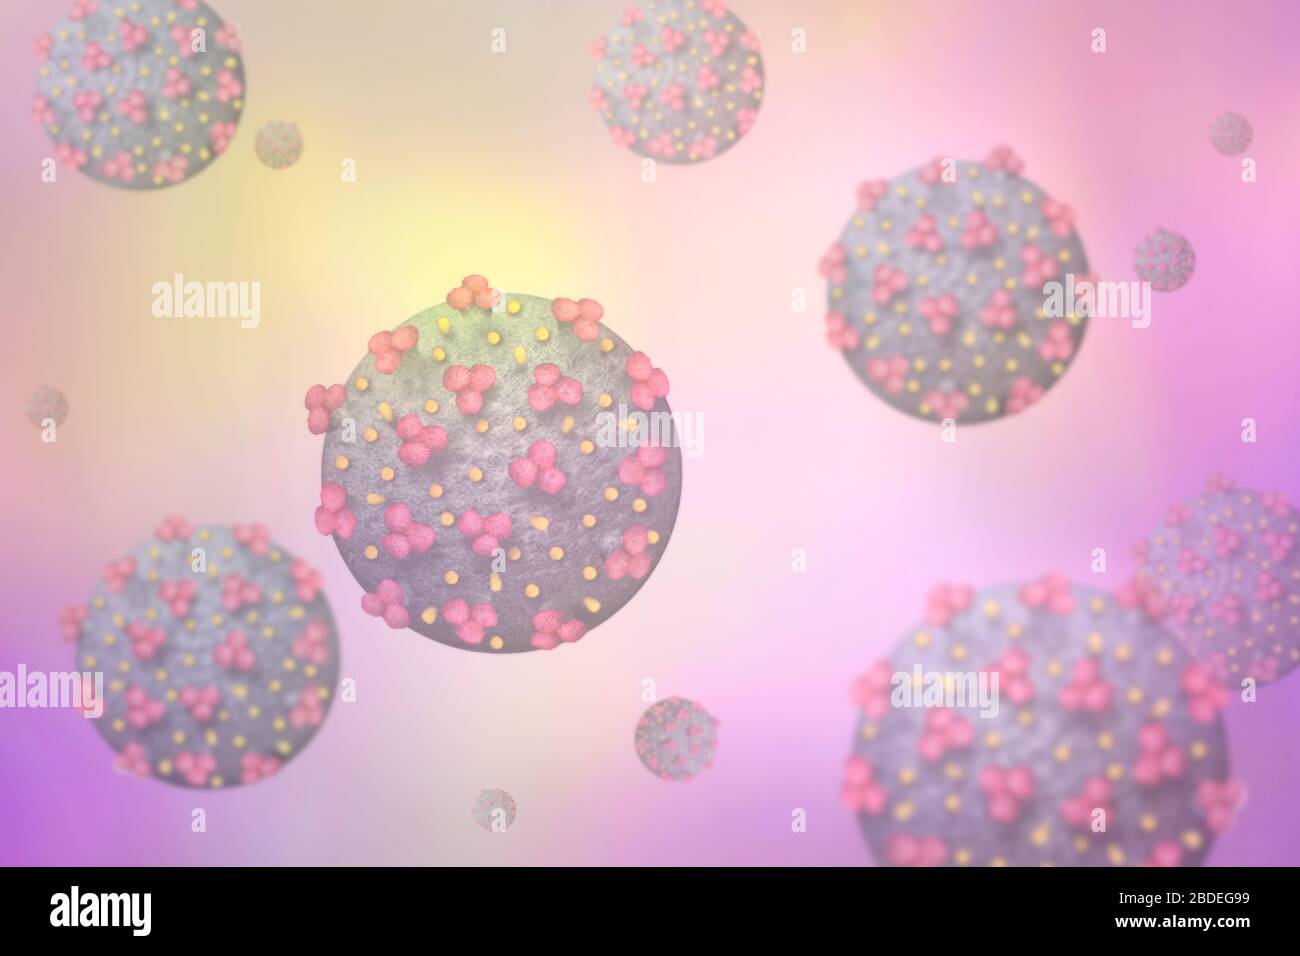 Digitally generated image of Coronavirus Stock Photo